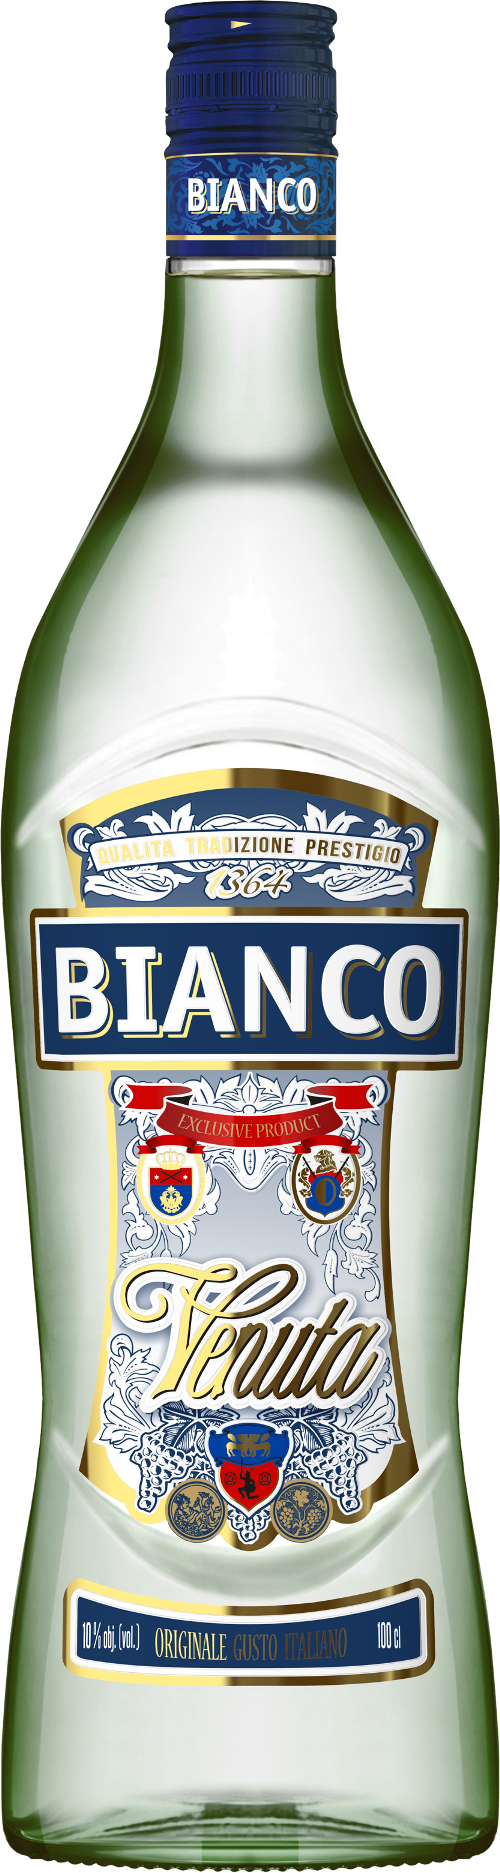 Venuta Bianco 100 cl. - 10% - FRUGTVIN - VIN MED MERE .DK